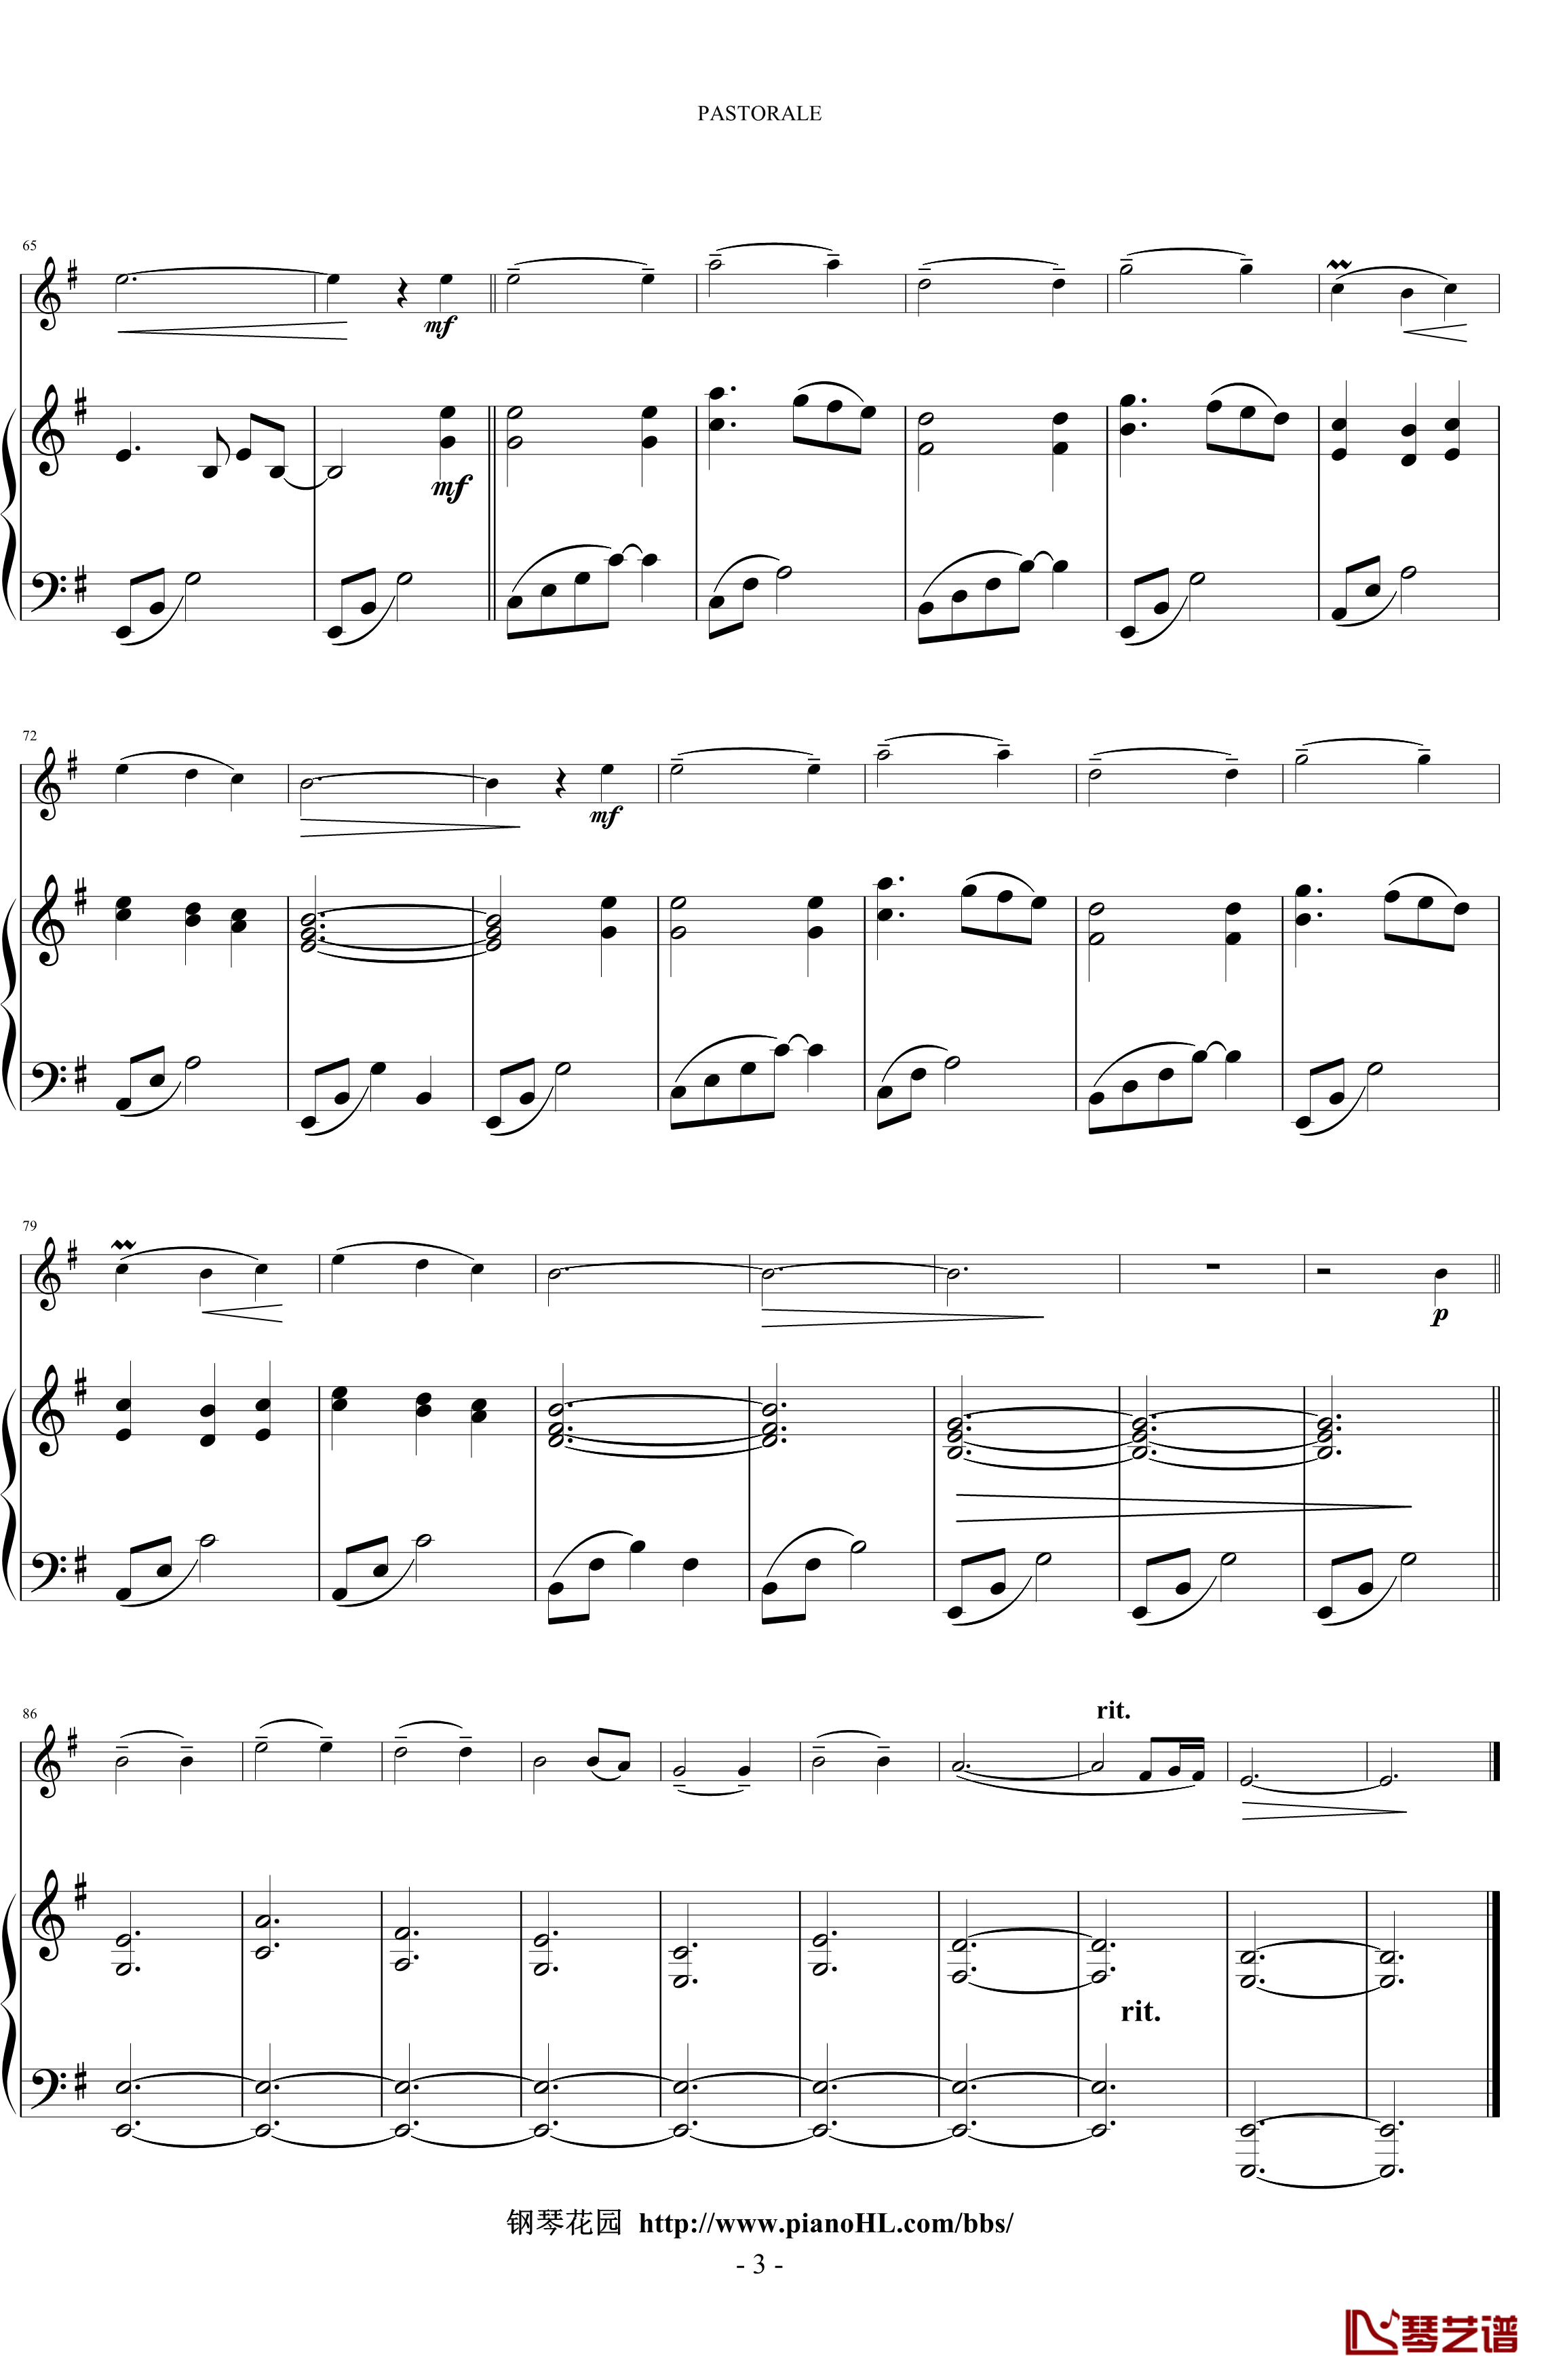 pastorale钢琴谱-神秘园乐队3